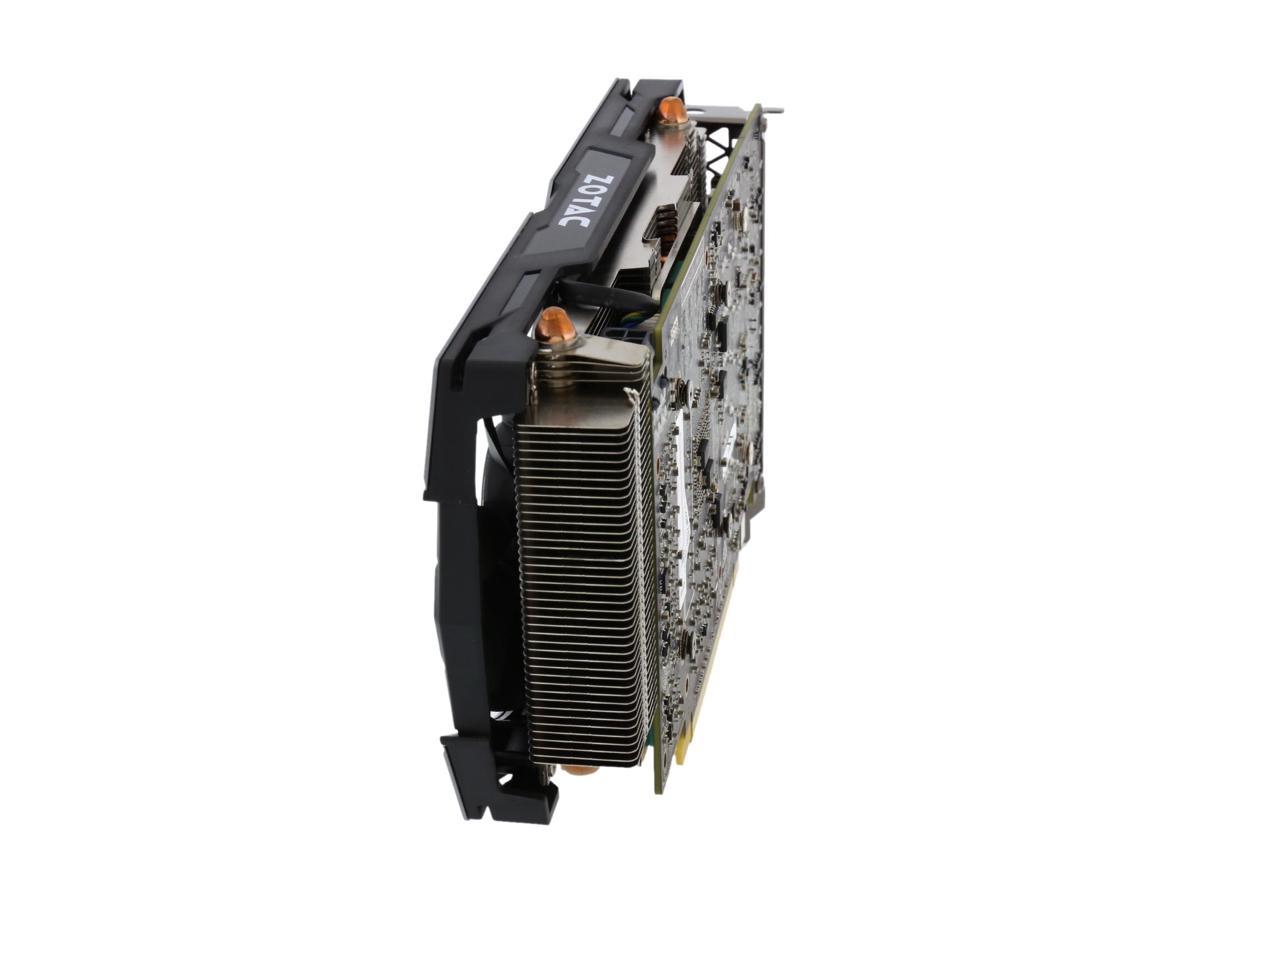 ZOTAC GeForce GTX 1060 AMP!, ZT-P10600B-10M, 6GB GDDR5 Super 